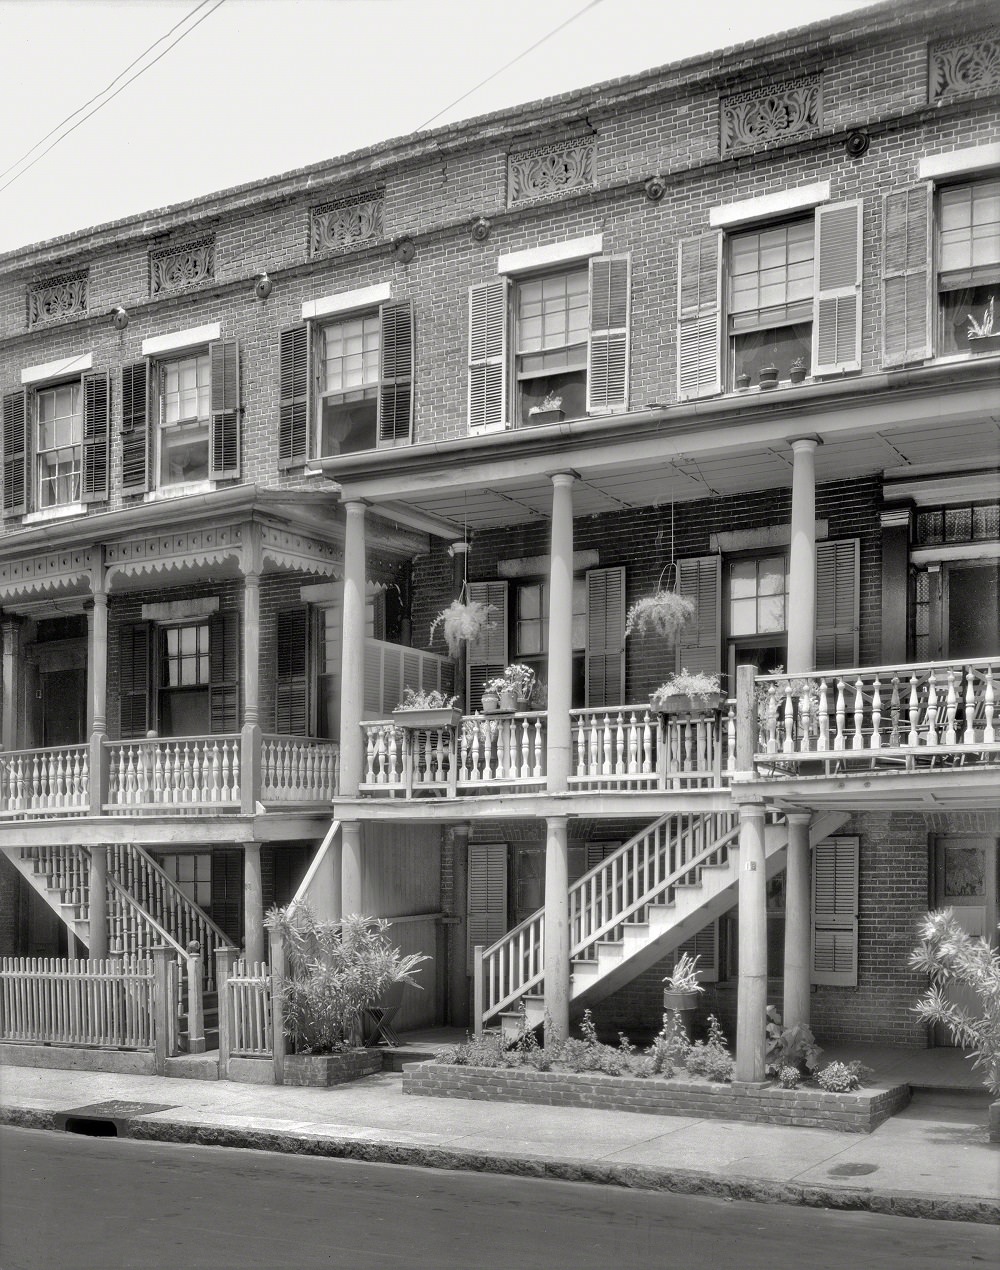 18 & 20 Wentworth Street, Charleston, 1937